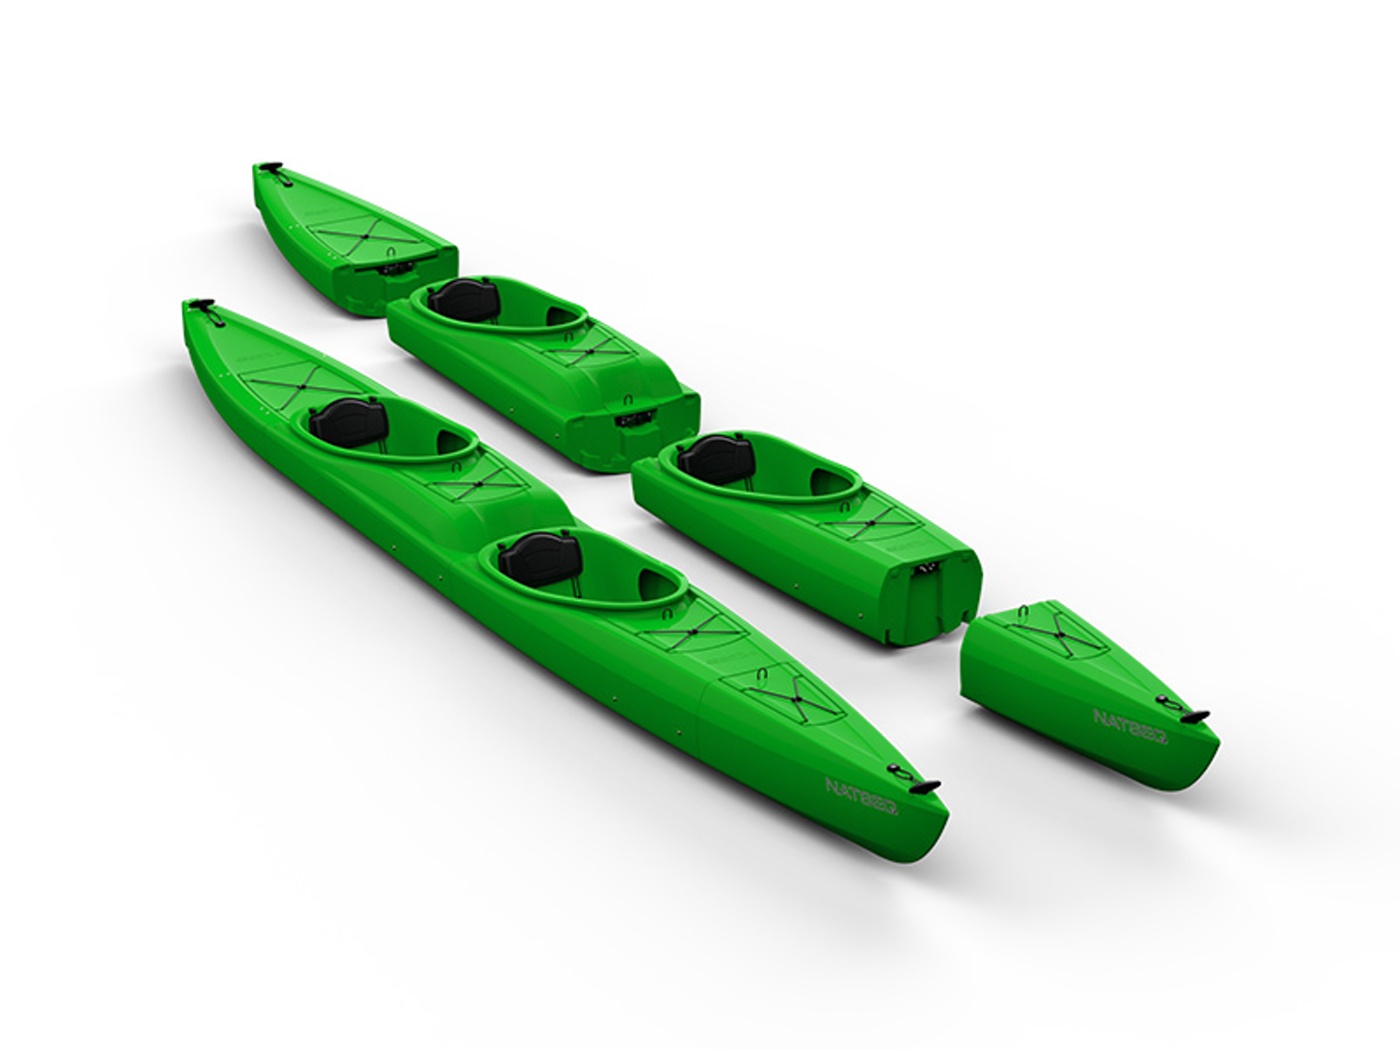 kayak innovations_natseq_tandem_green.jpg